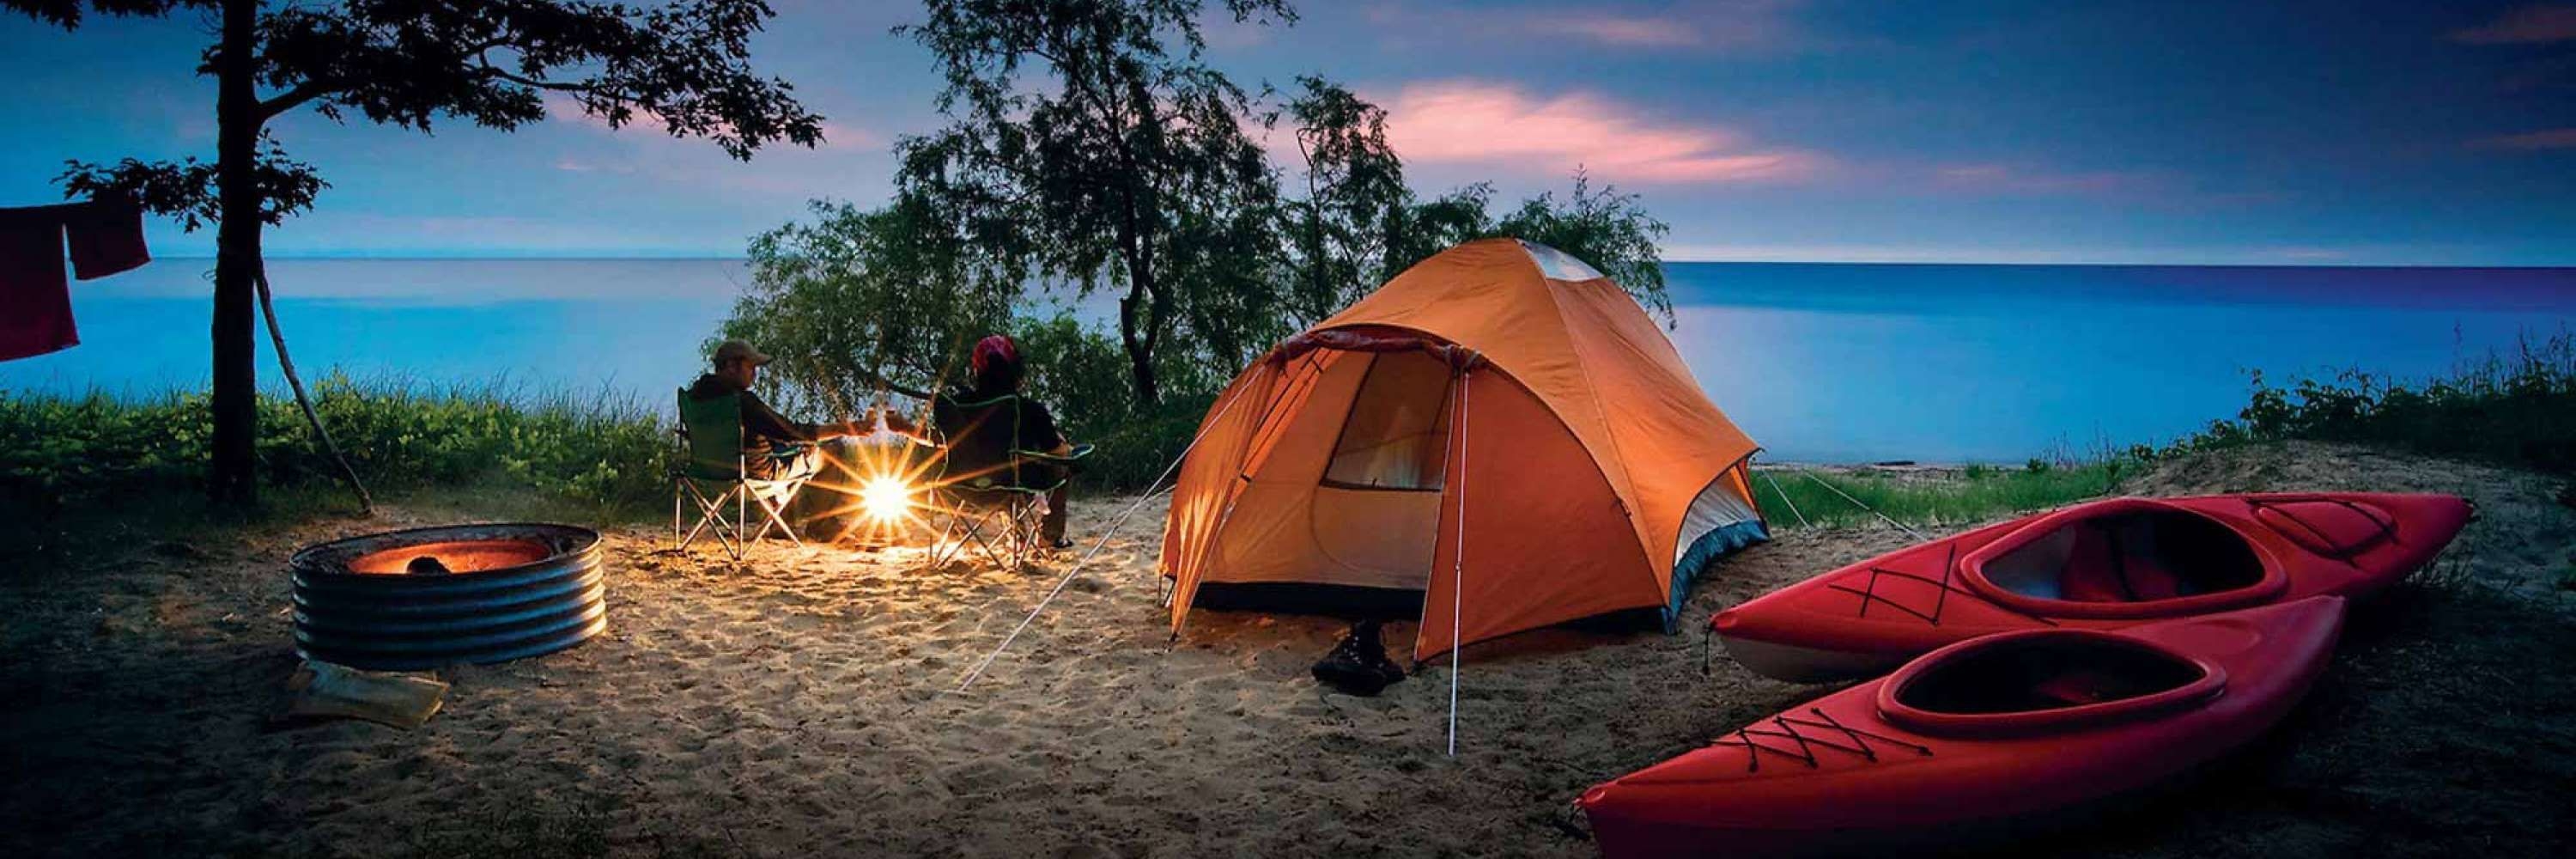 Кемпинги рядом. Поляна Увильды кемпинг. Палатка Camping Tent. Увильды кемпинг с палатками. Глэмпинг Увильды.